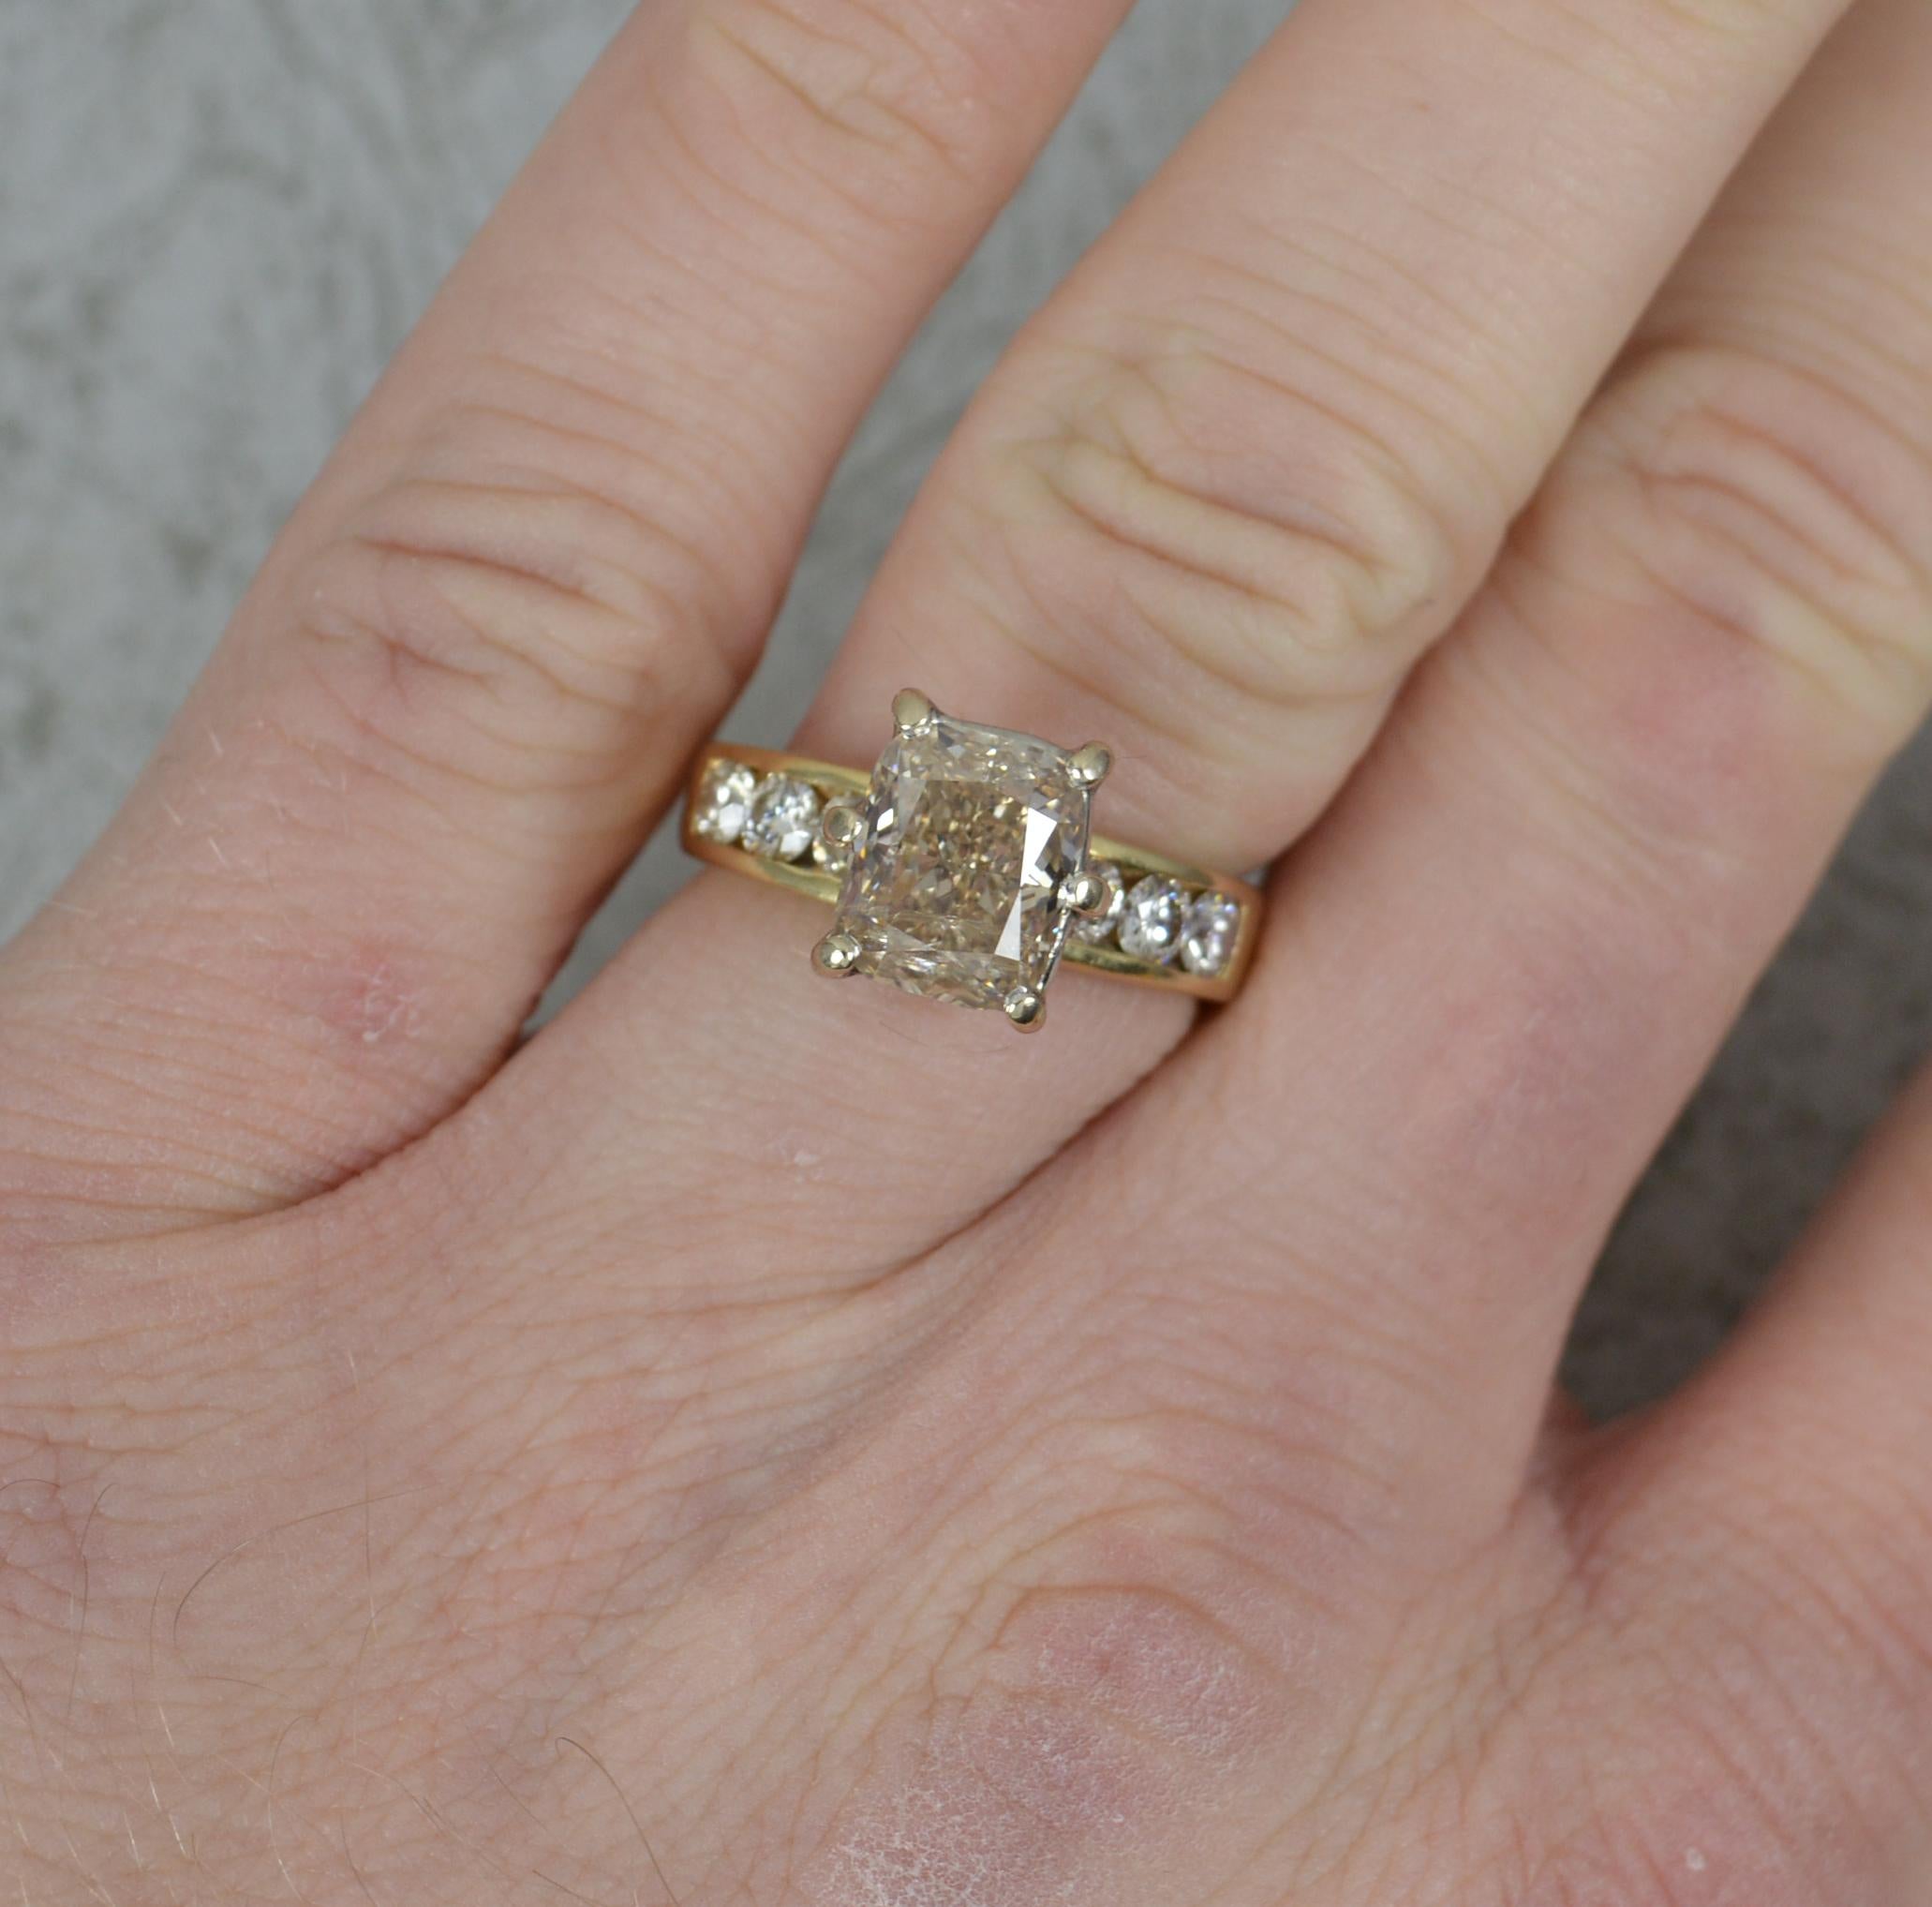 Une merveilleuse bague de fiançailles en diamant.
Exemple d'or jaune massif 18 carats.
La bague est ornée d'un grand diamant naturel de taille radieuse au centre. Il mesure 7 mm x 8,6 mm et pèse environ 2,5 carats. Six autres diamants ronds de